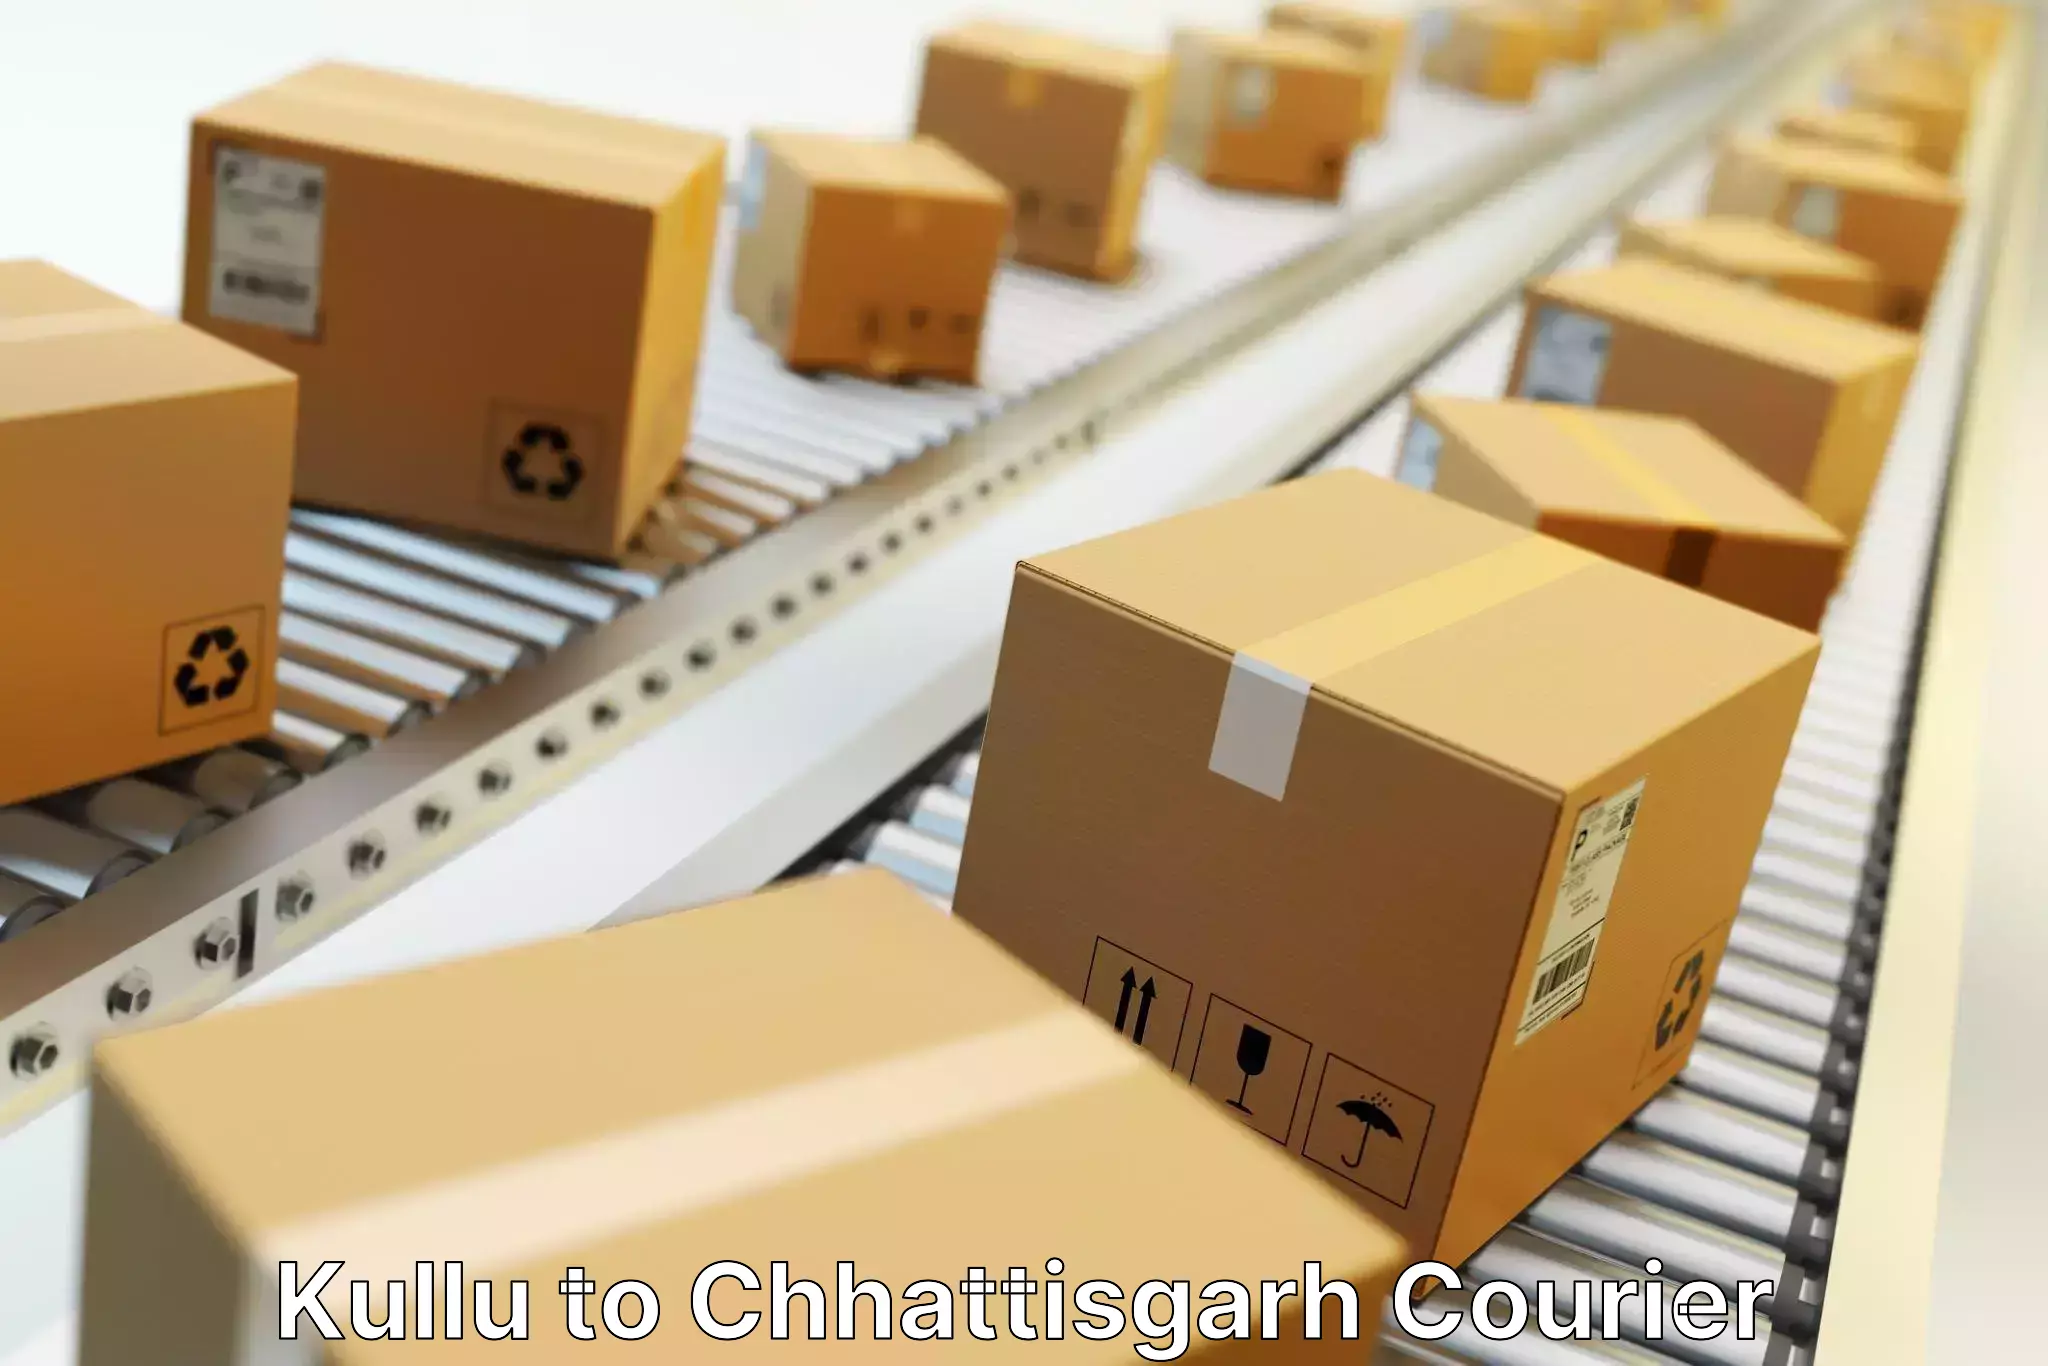 Smart shipping technology Kullu to Patna Chhattisgarh